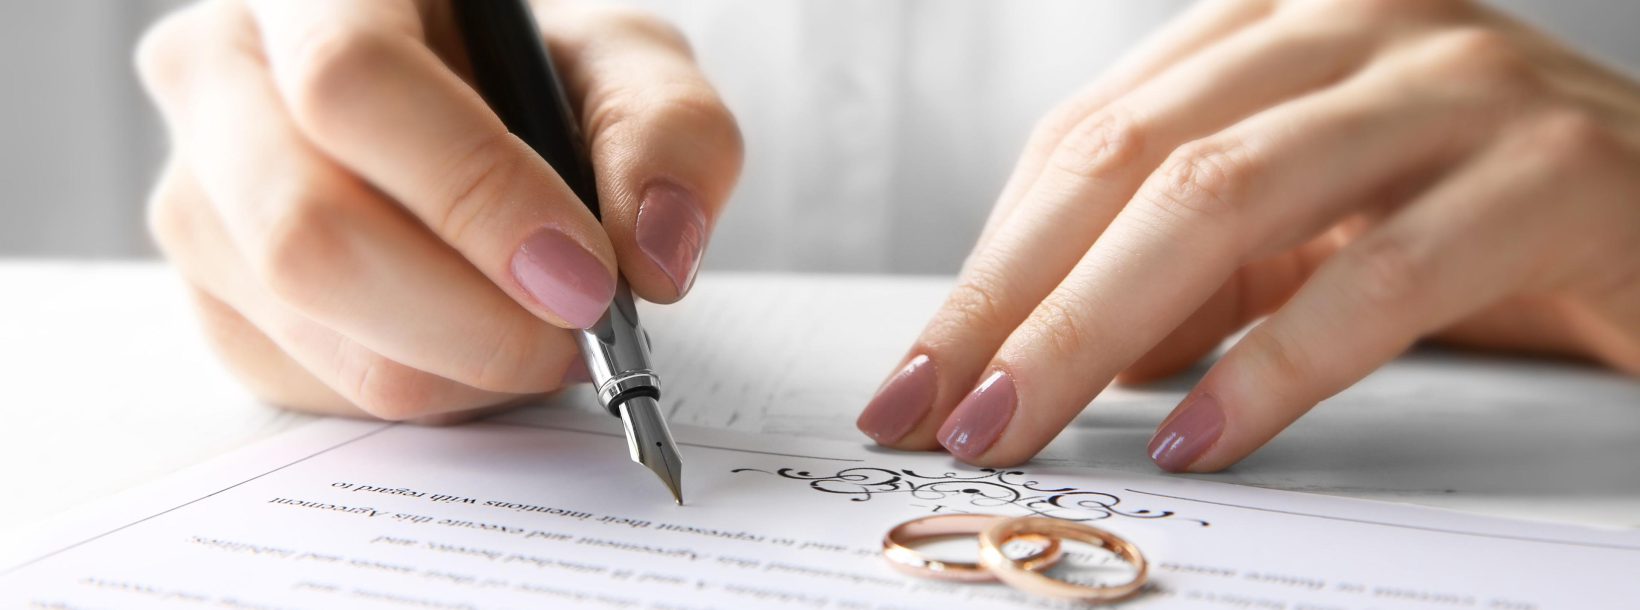 Welche Punkte sollte ein Ehevertrag enthalten?